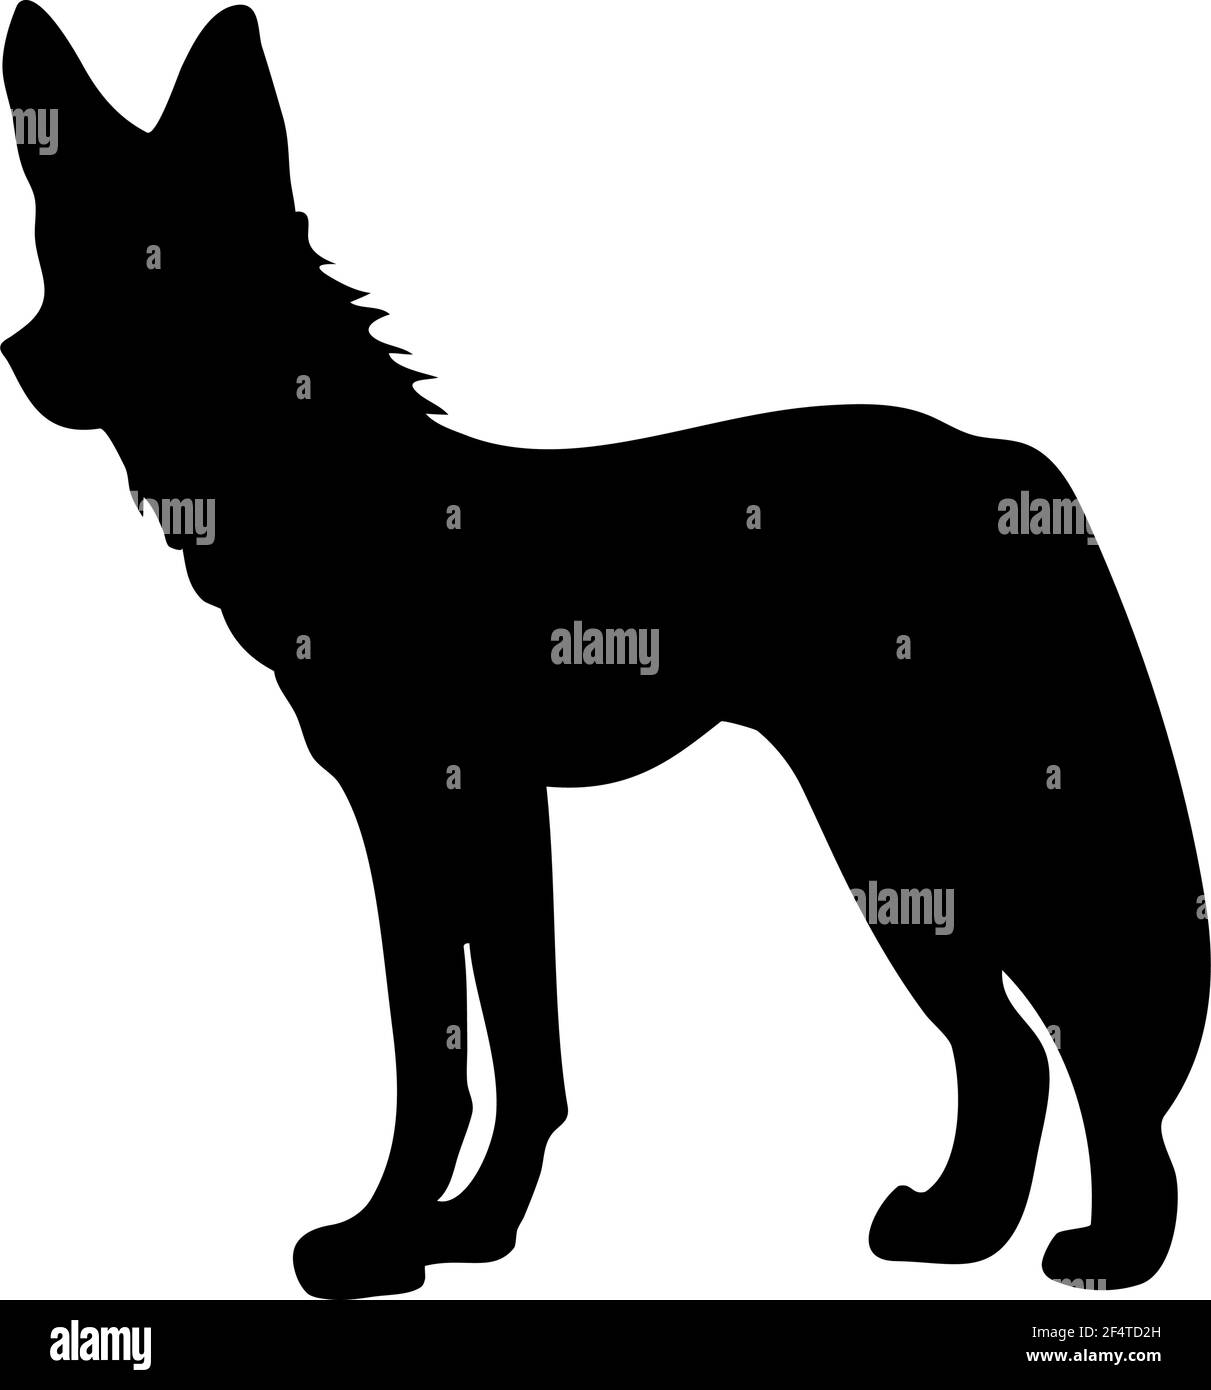 Sagoma del cane Hyena. Linee lisce e pulite. Silhouette per cani Hyena con dettagli elevati. Illustrazione vettoriale. Illustrazione Vettoriale